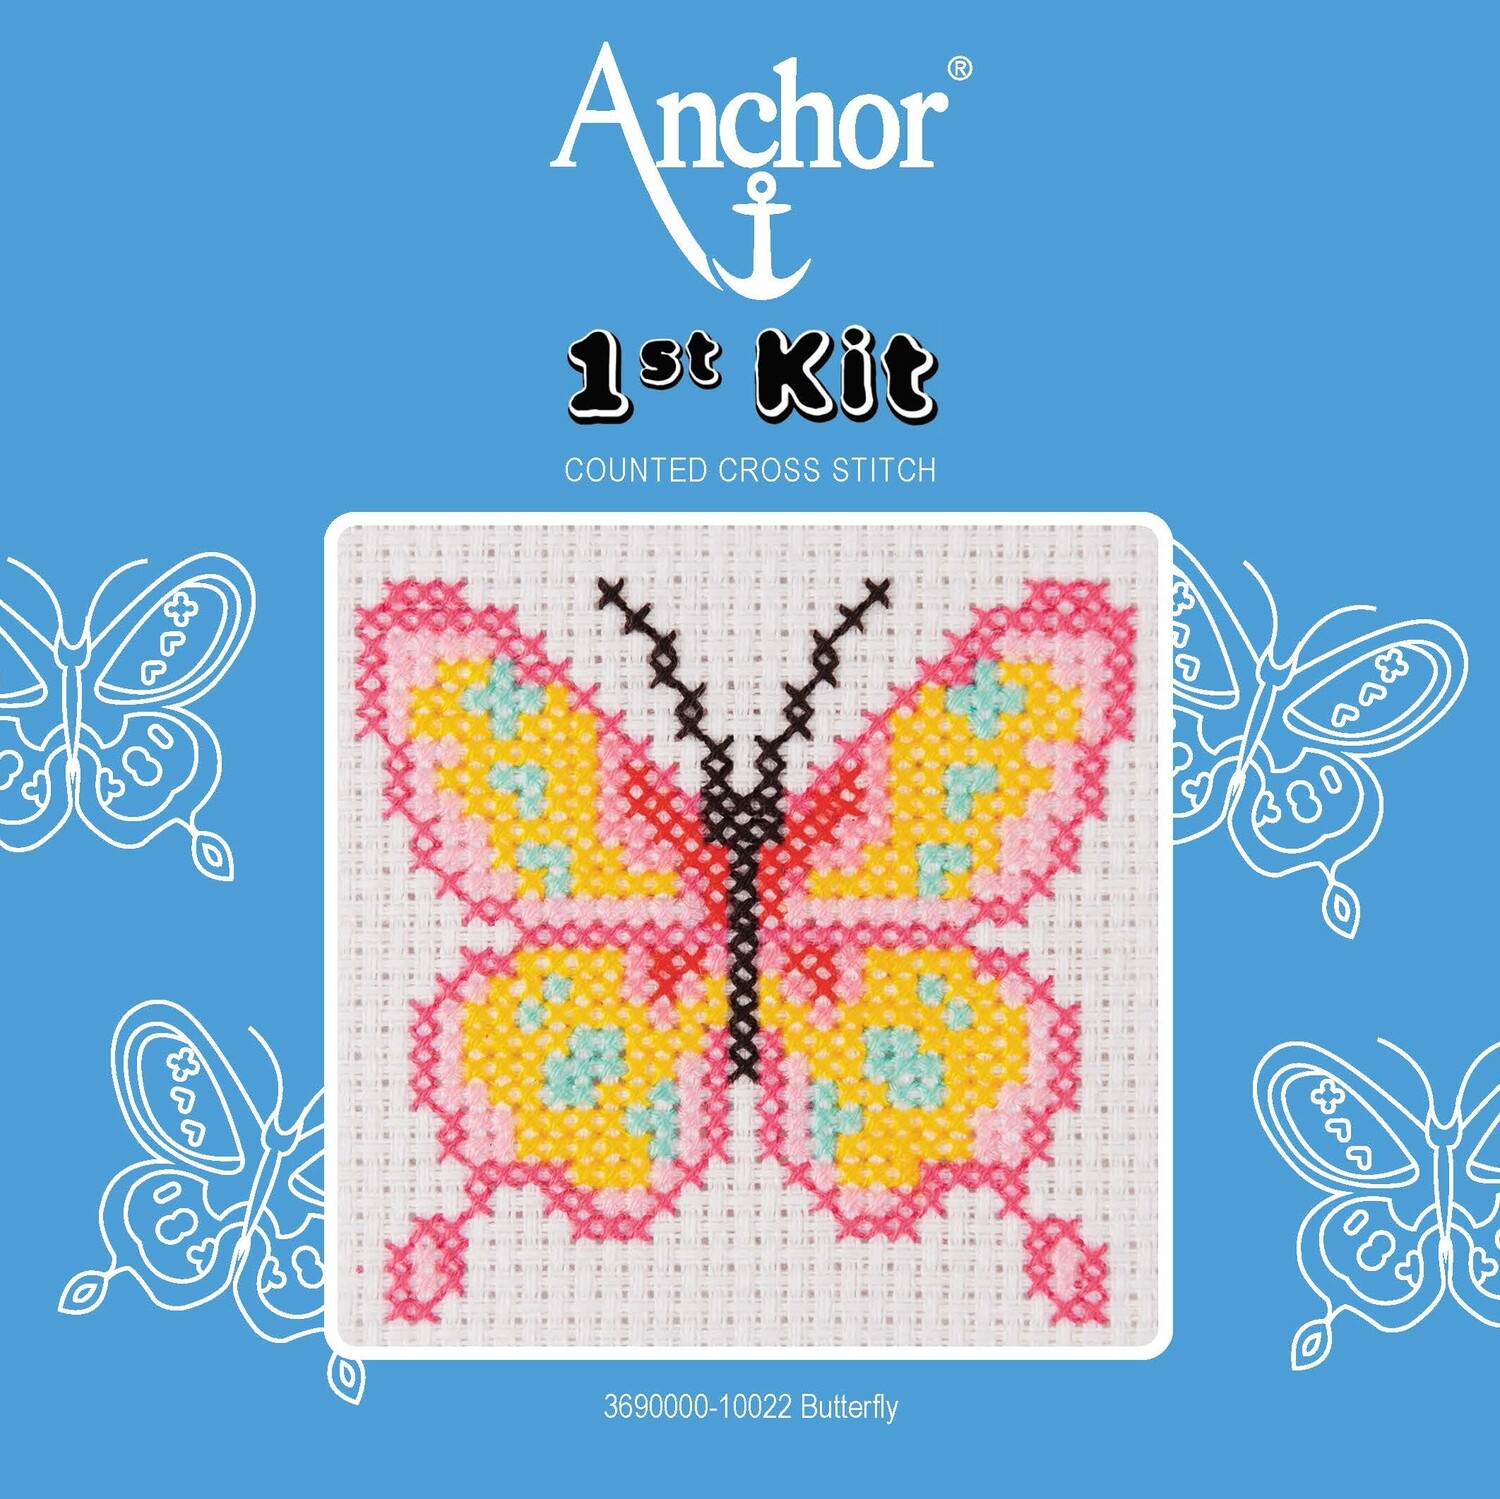 Anchor '1st Kit' gobelin hímzőkészlet gyerekeknek. Lepke 10022